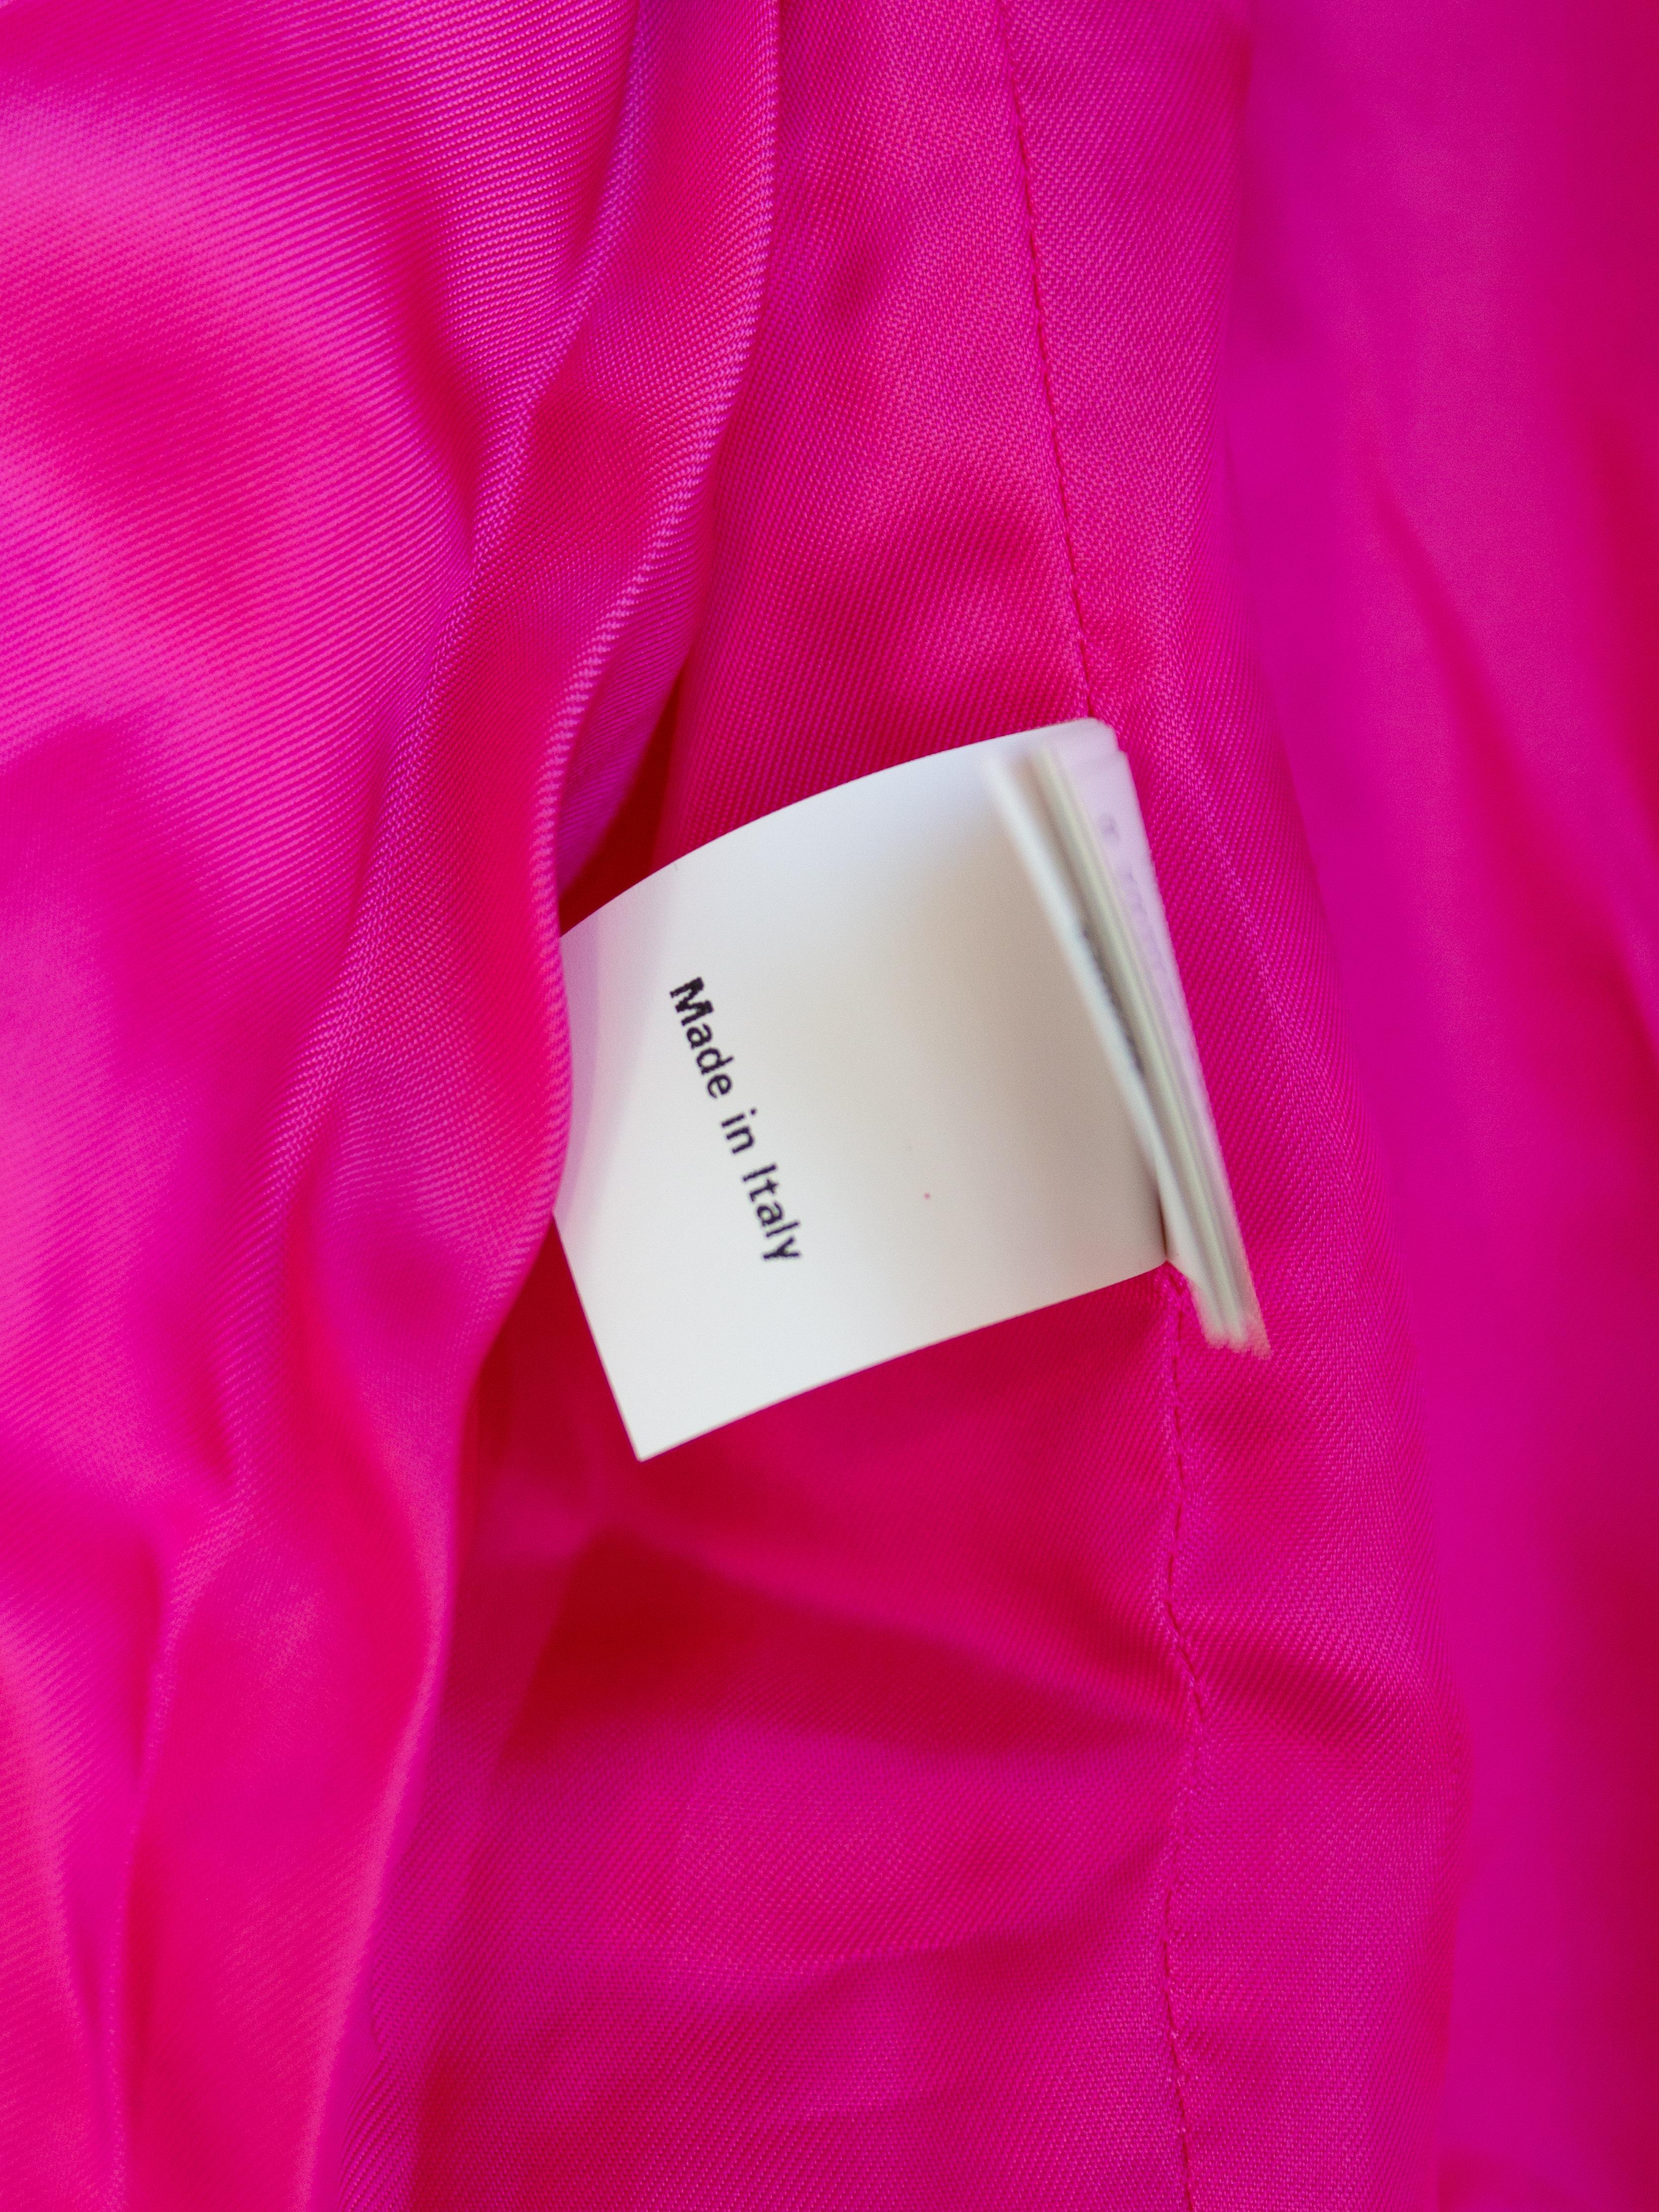 Moschino Couture S/S 2015 - Barbie - Veste rose ornée de strass et de cristaux en vente 12